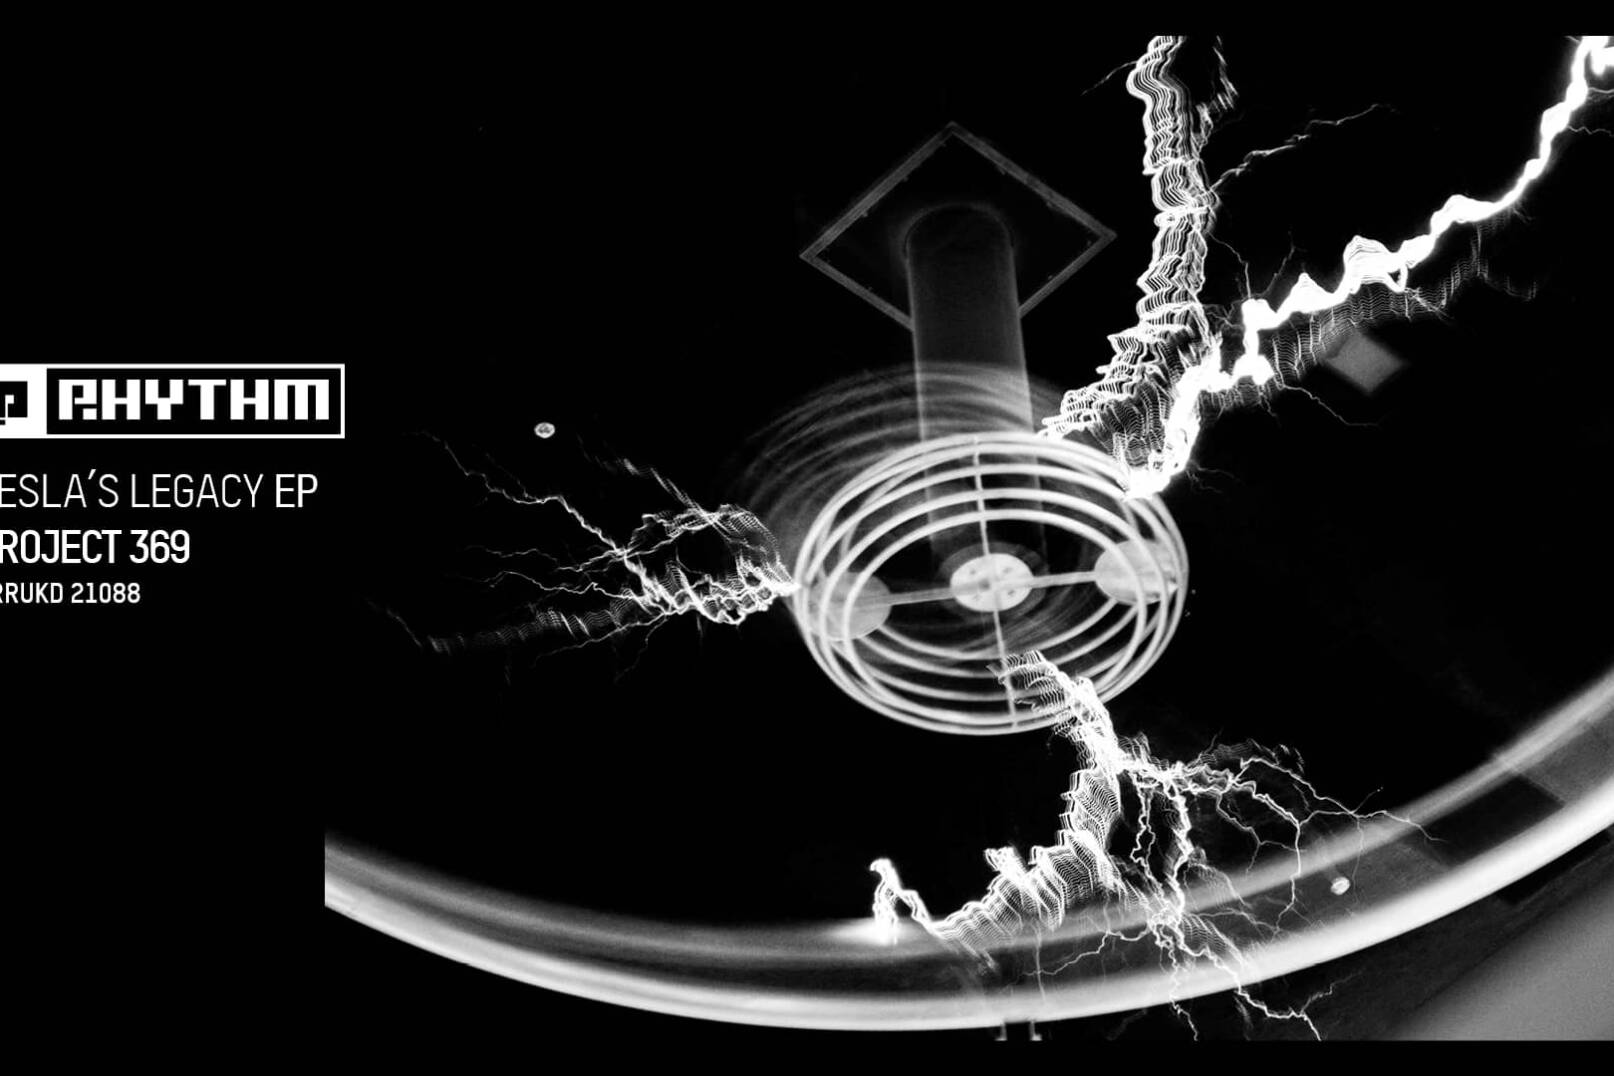 Project 369 debuta en Planet Rhythm con Tesla's Legacy EP